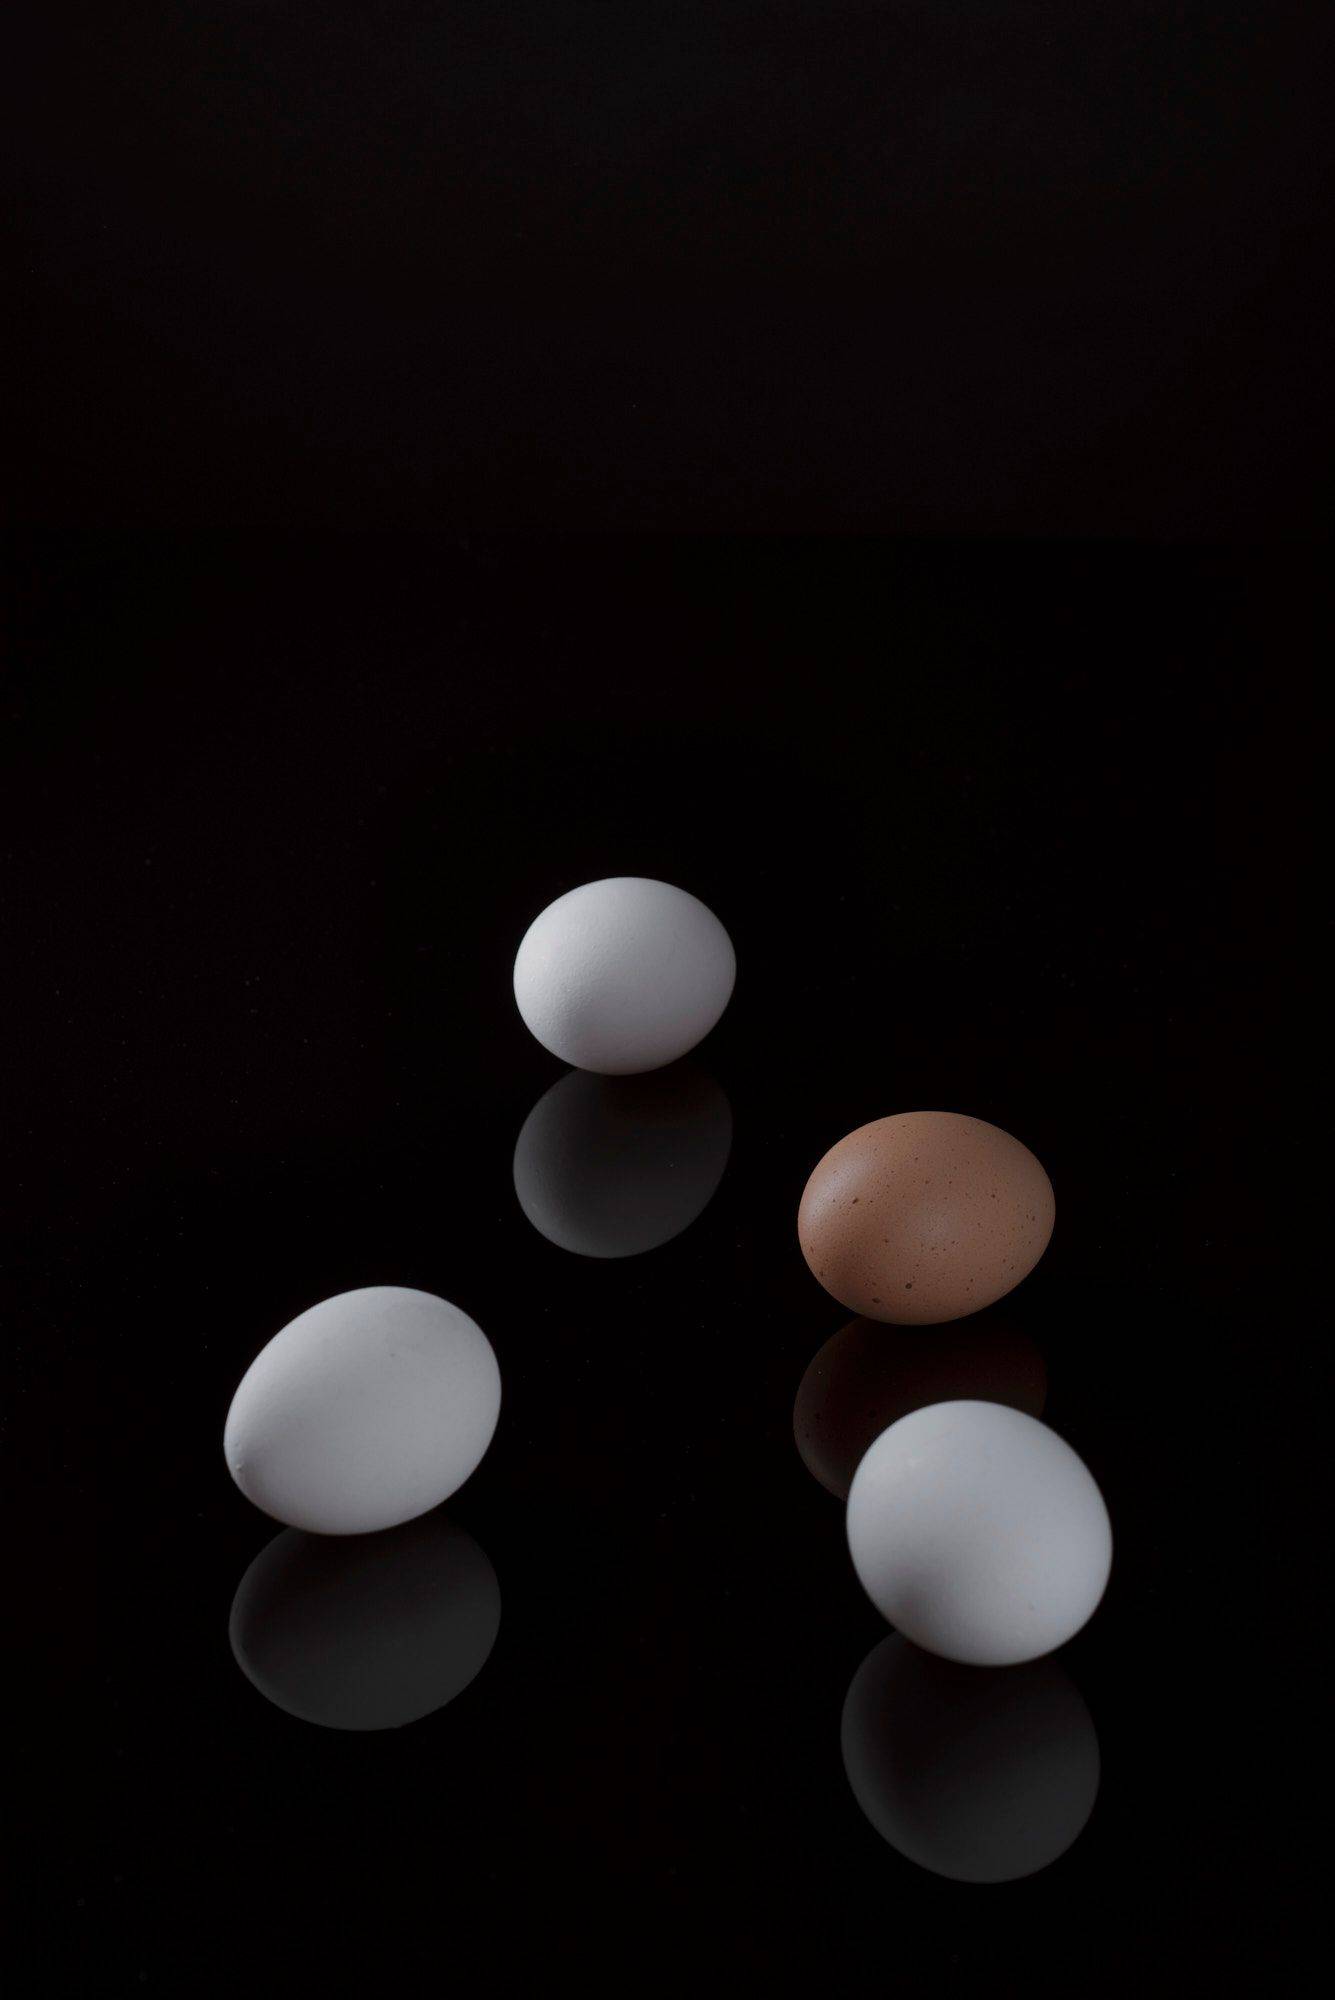 drei weiße und ein braunes ei mit schwarzem hintergrund